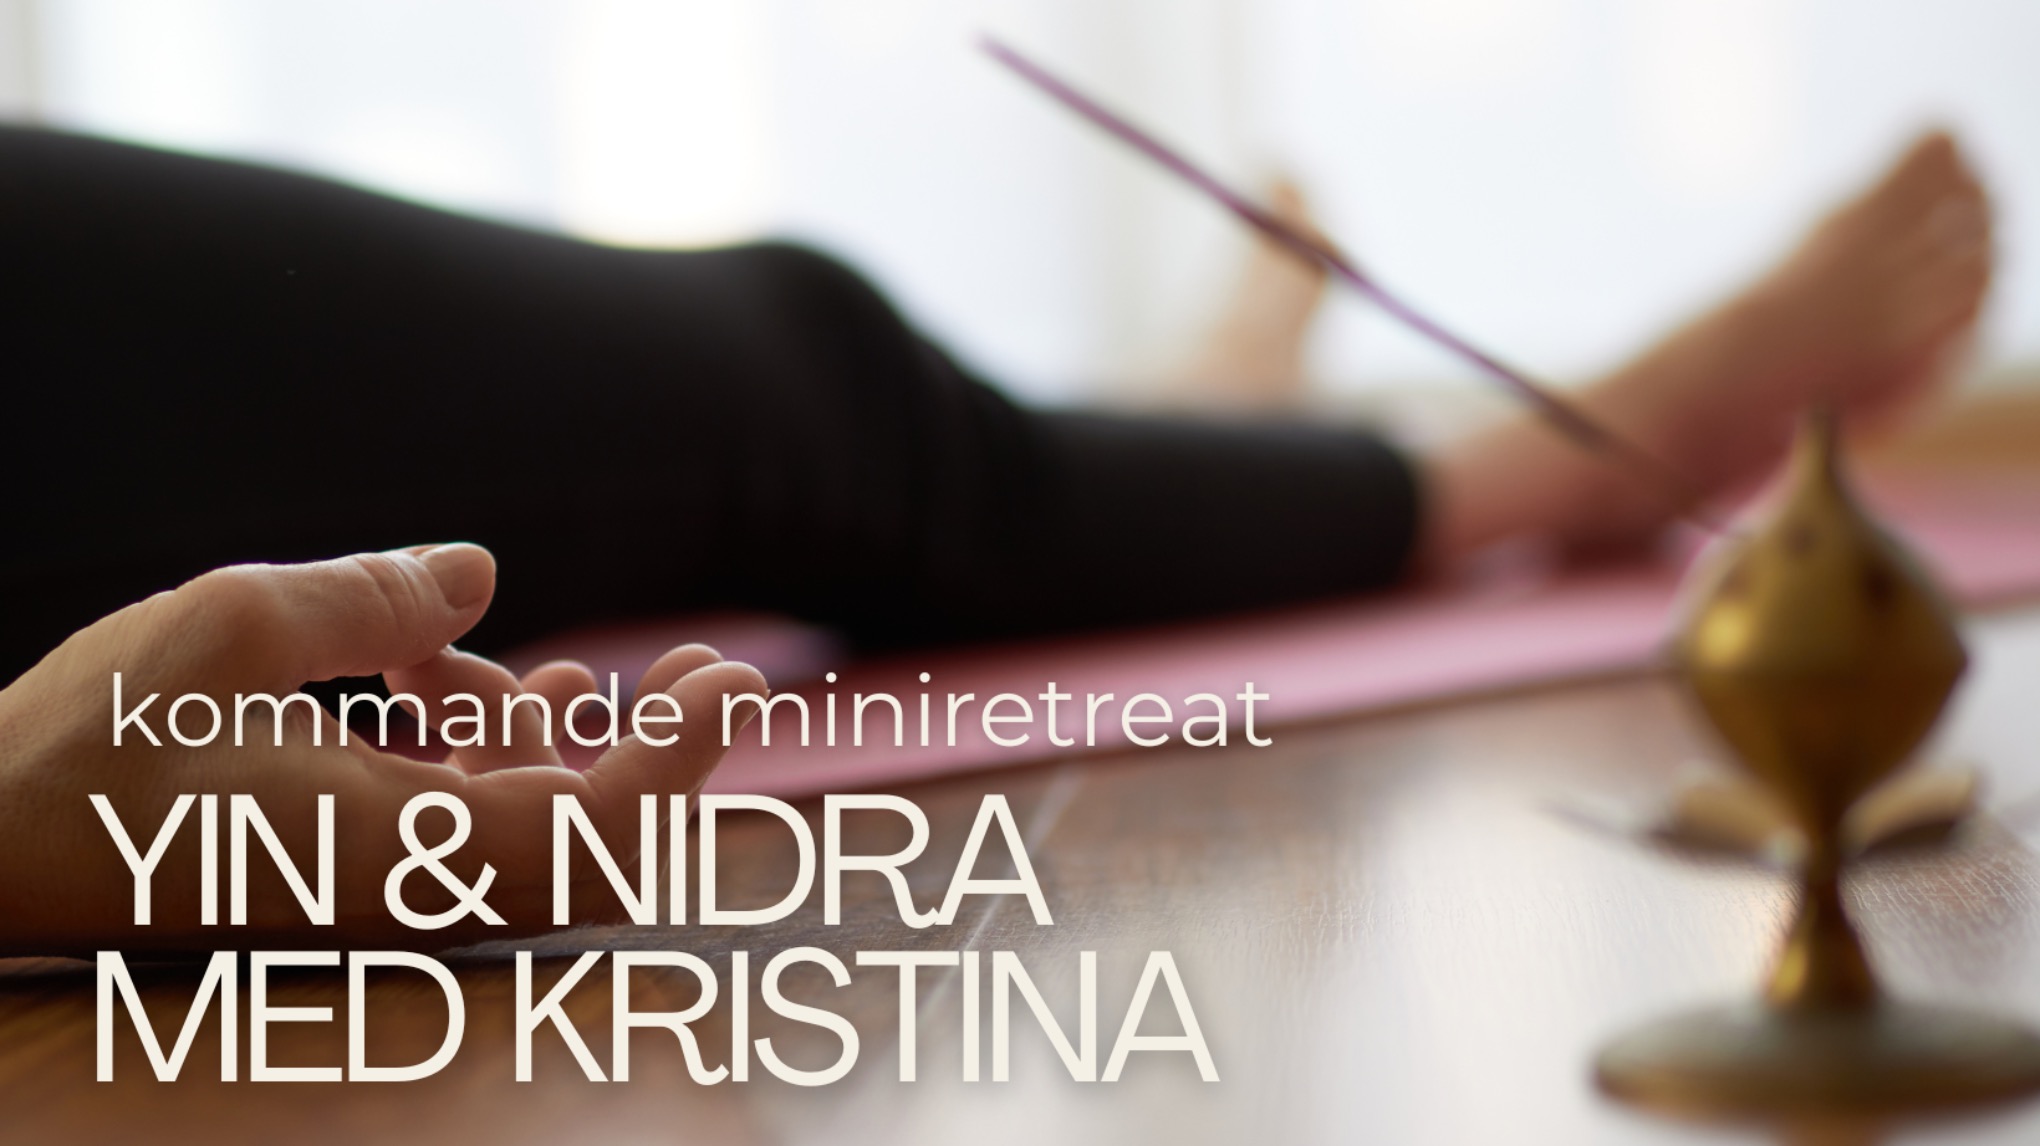 MINIRETREAT - Yin & Nidra i vårtid med Kristina - Falun